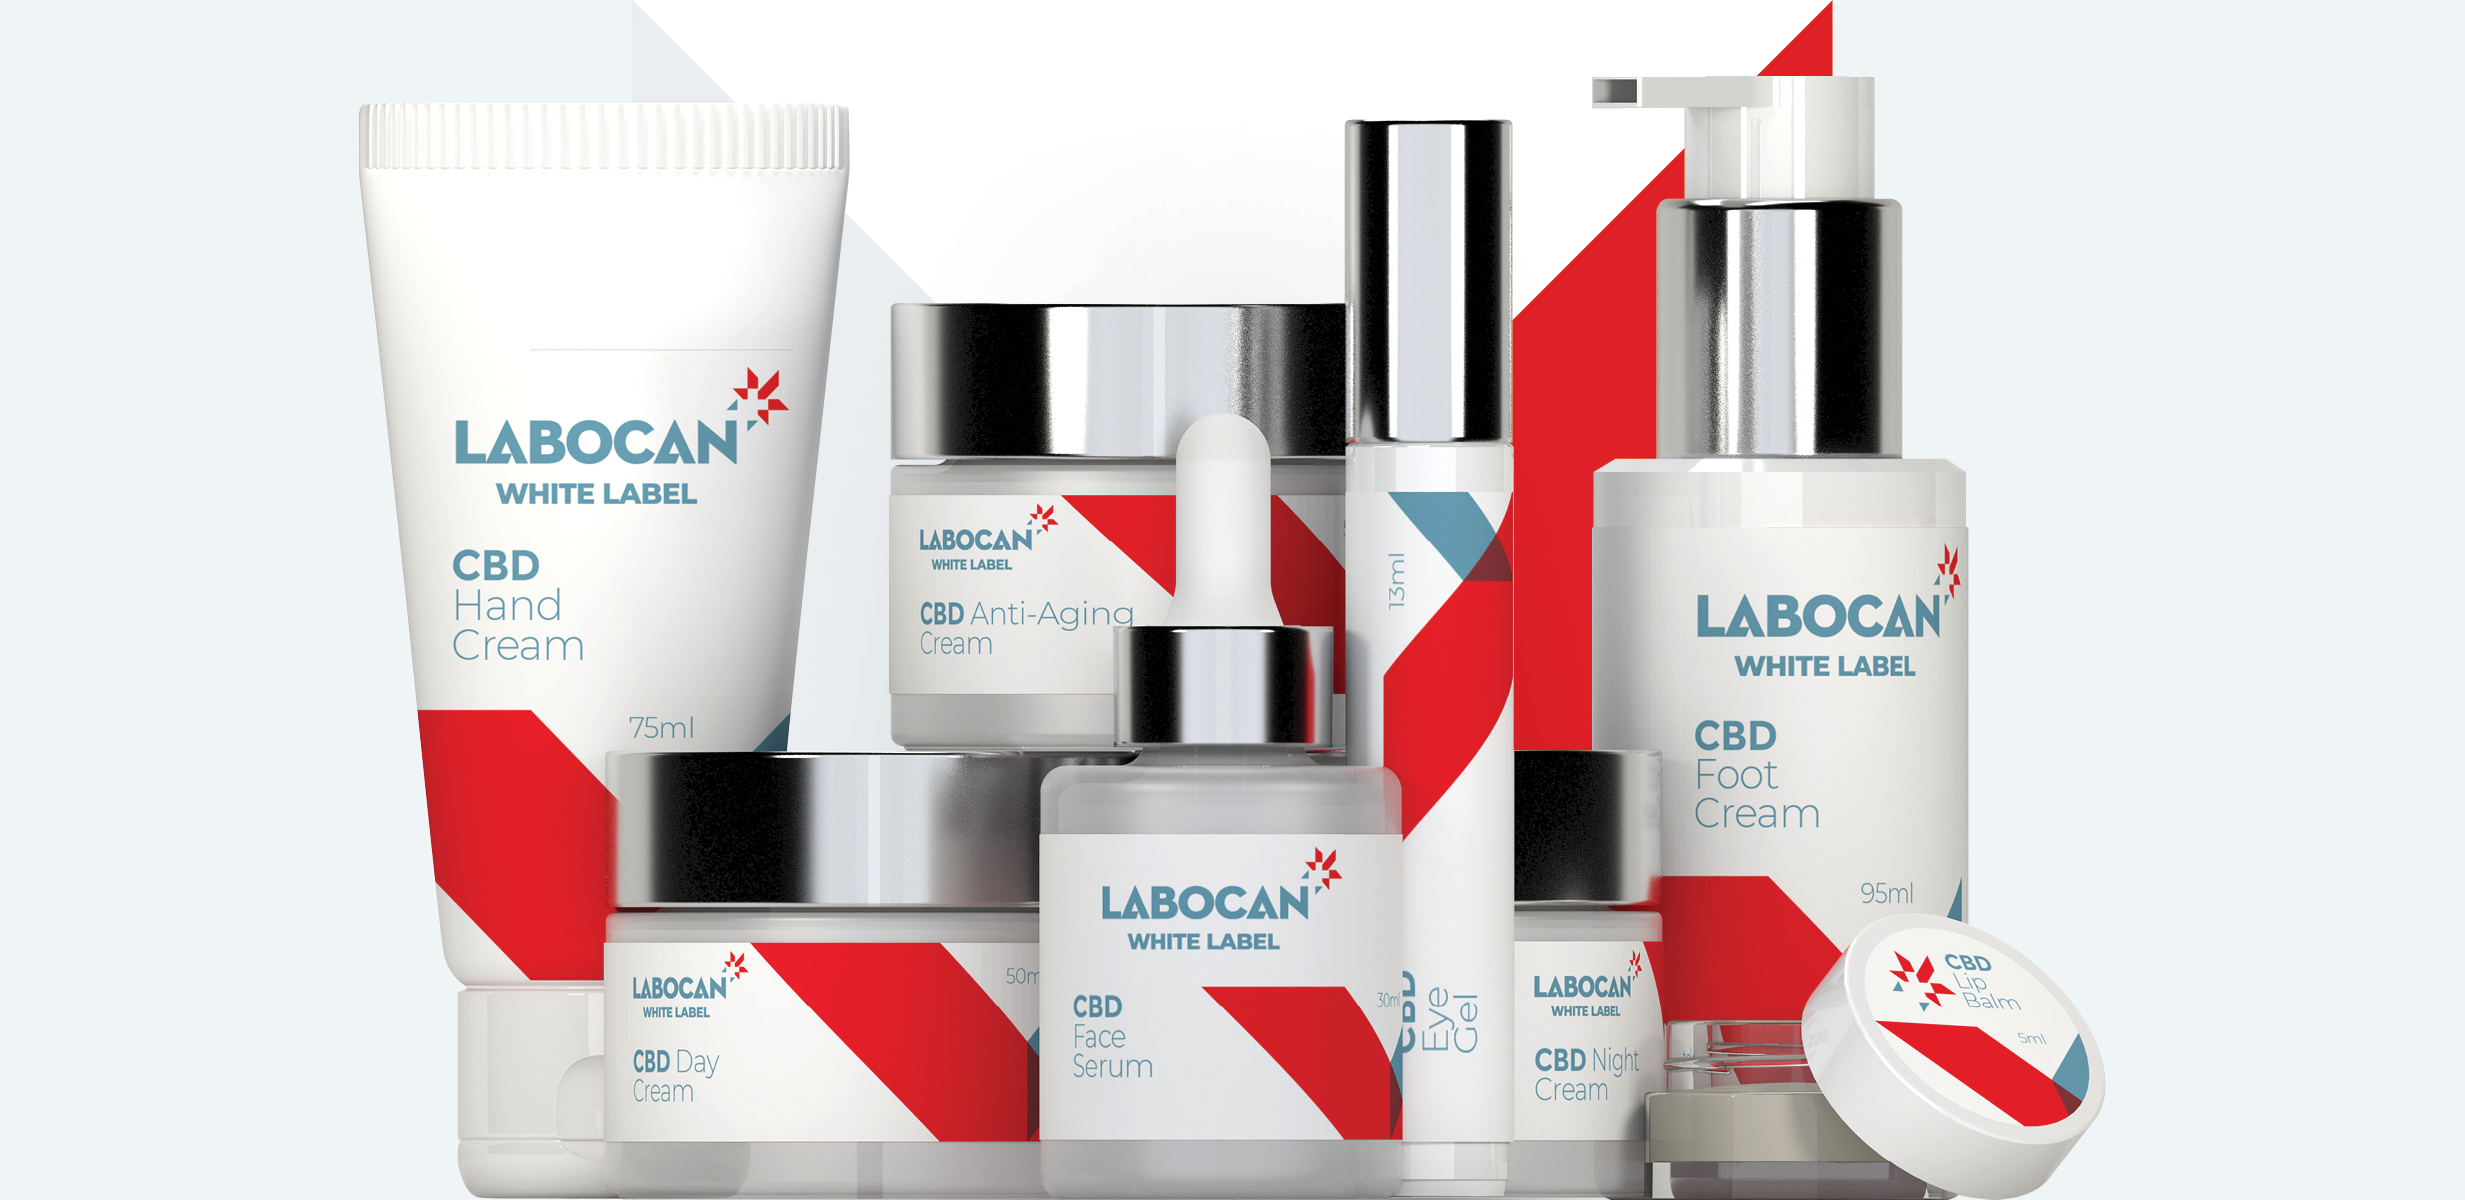 Labocan White label cbd cosmetics